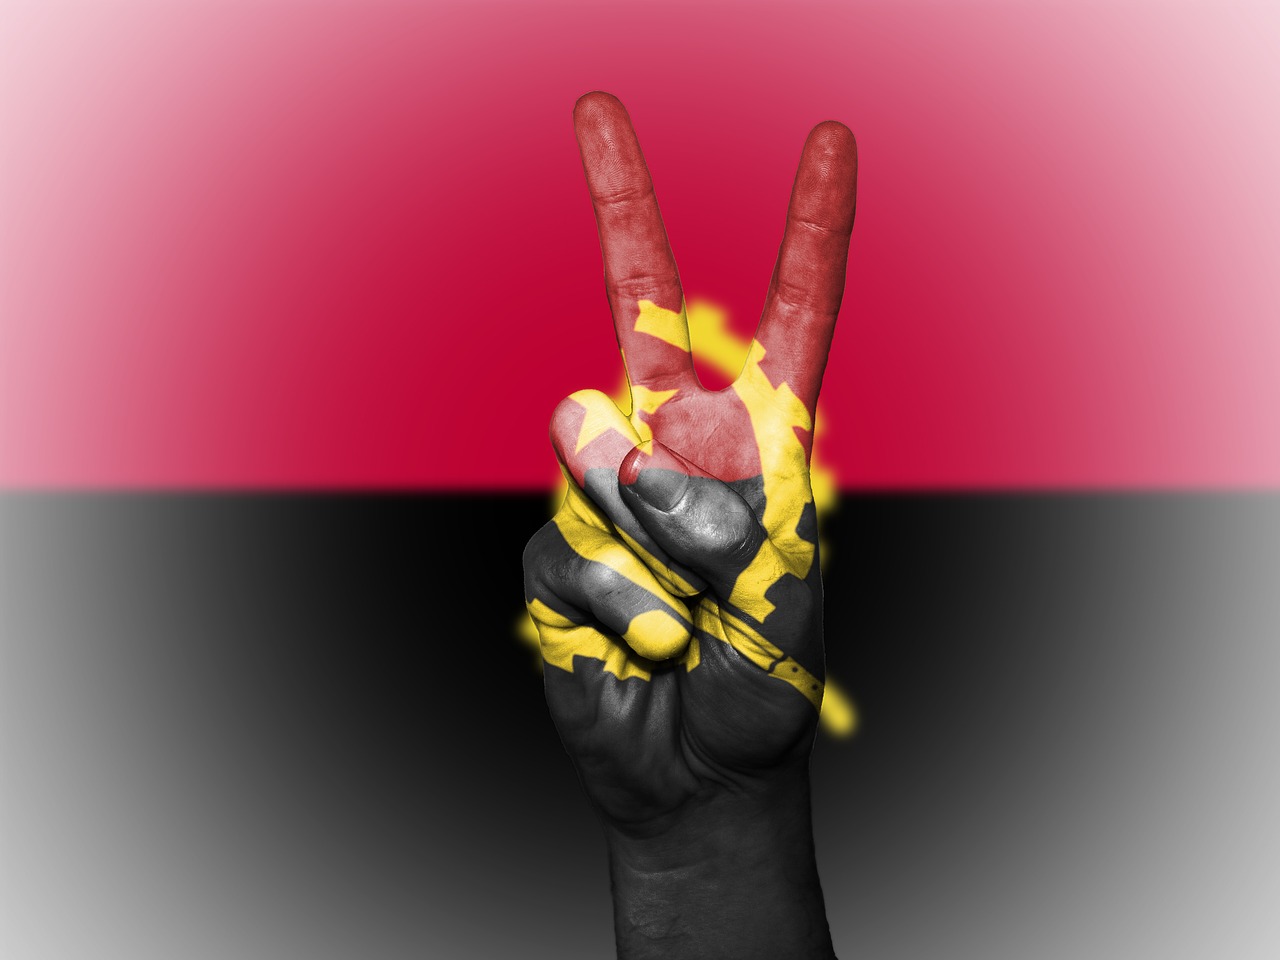 angola flag peace free photo